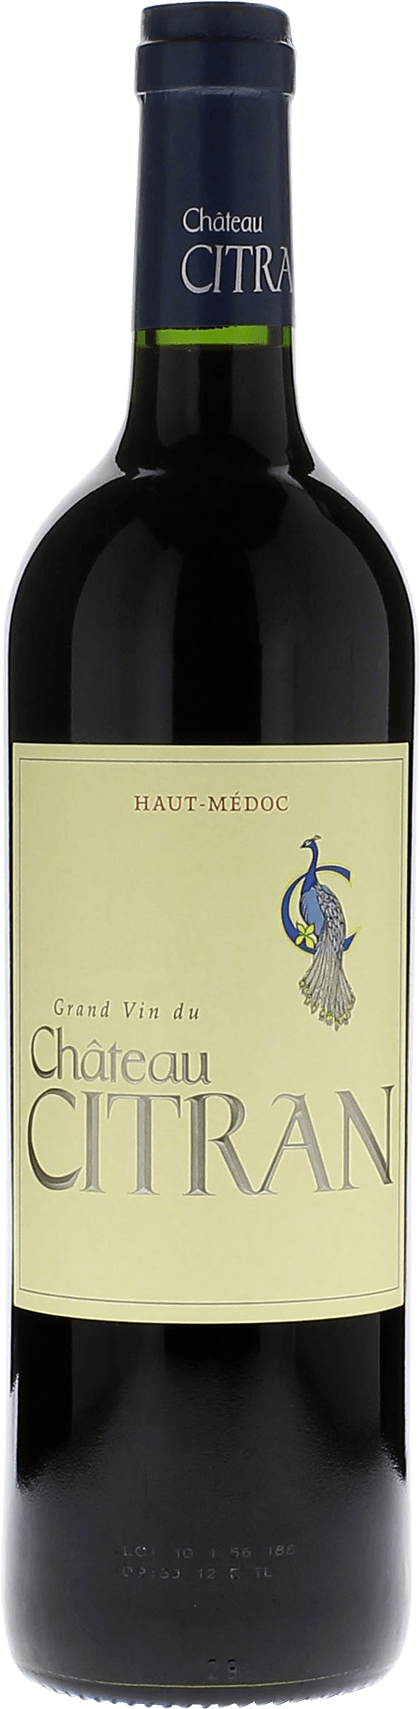 Citran 2015  Haut-Mdoc, Bordeaux rouge